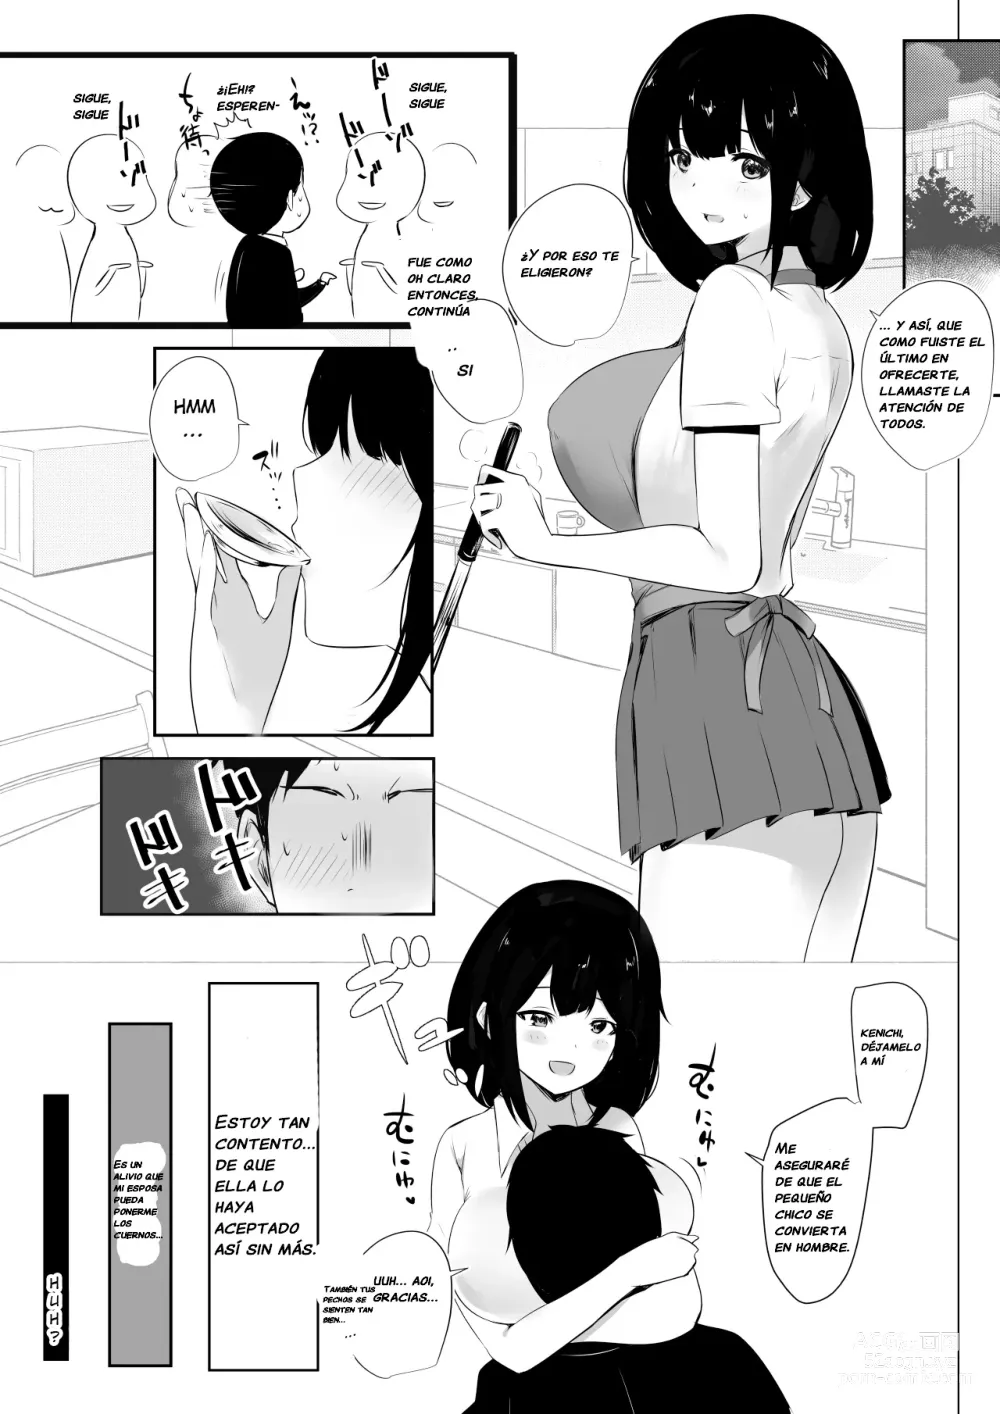 Page 8 of doujinshi Vi a una esposa de preparatoria de grandes pechos que solo deja que otro hombre la mime y abrace 3.